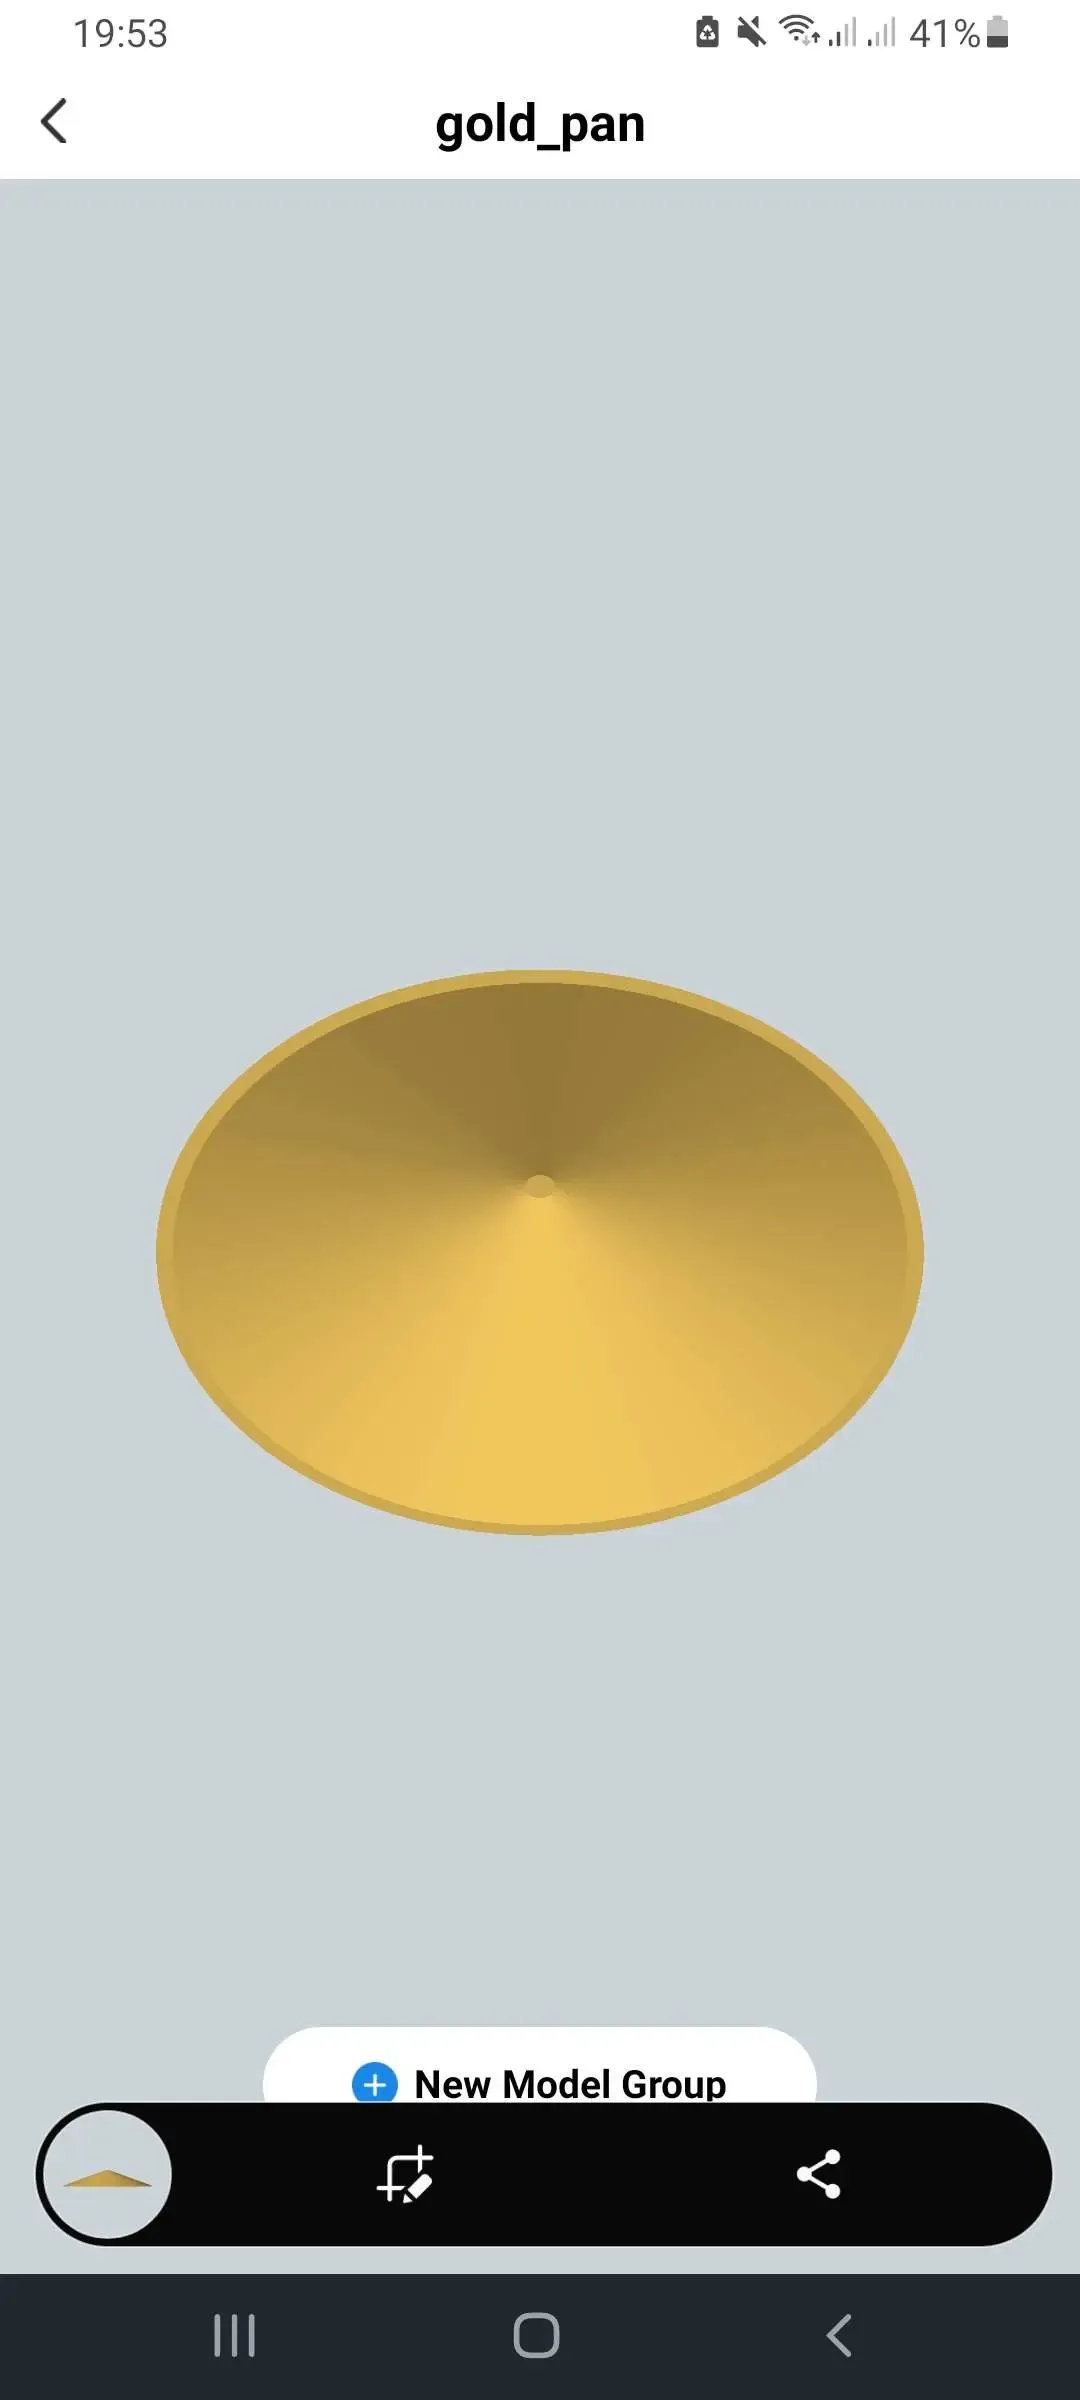 Gold pan vortex